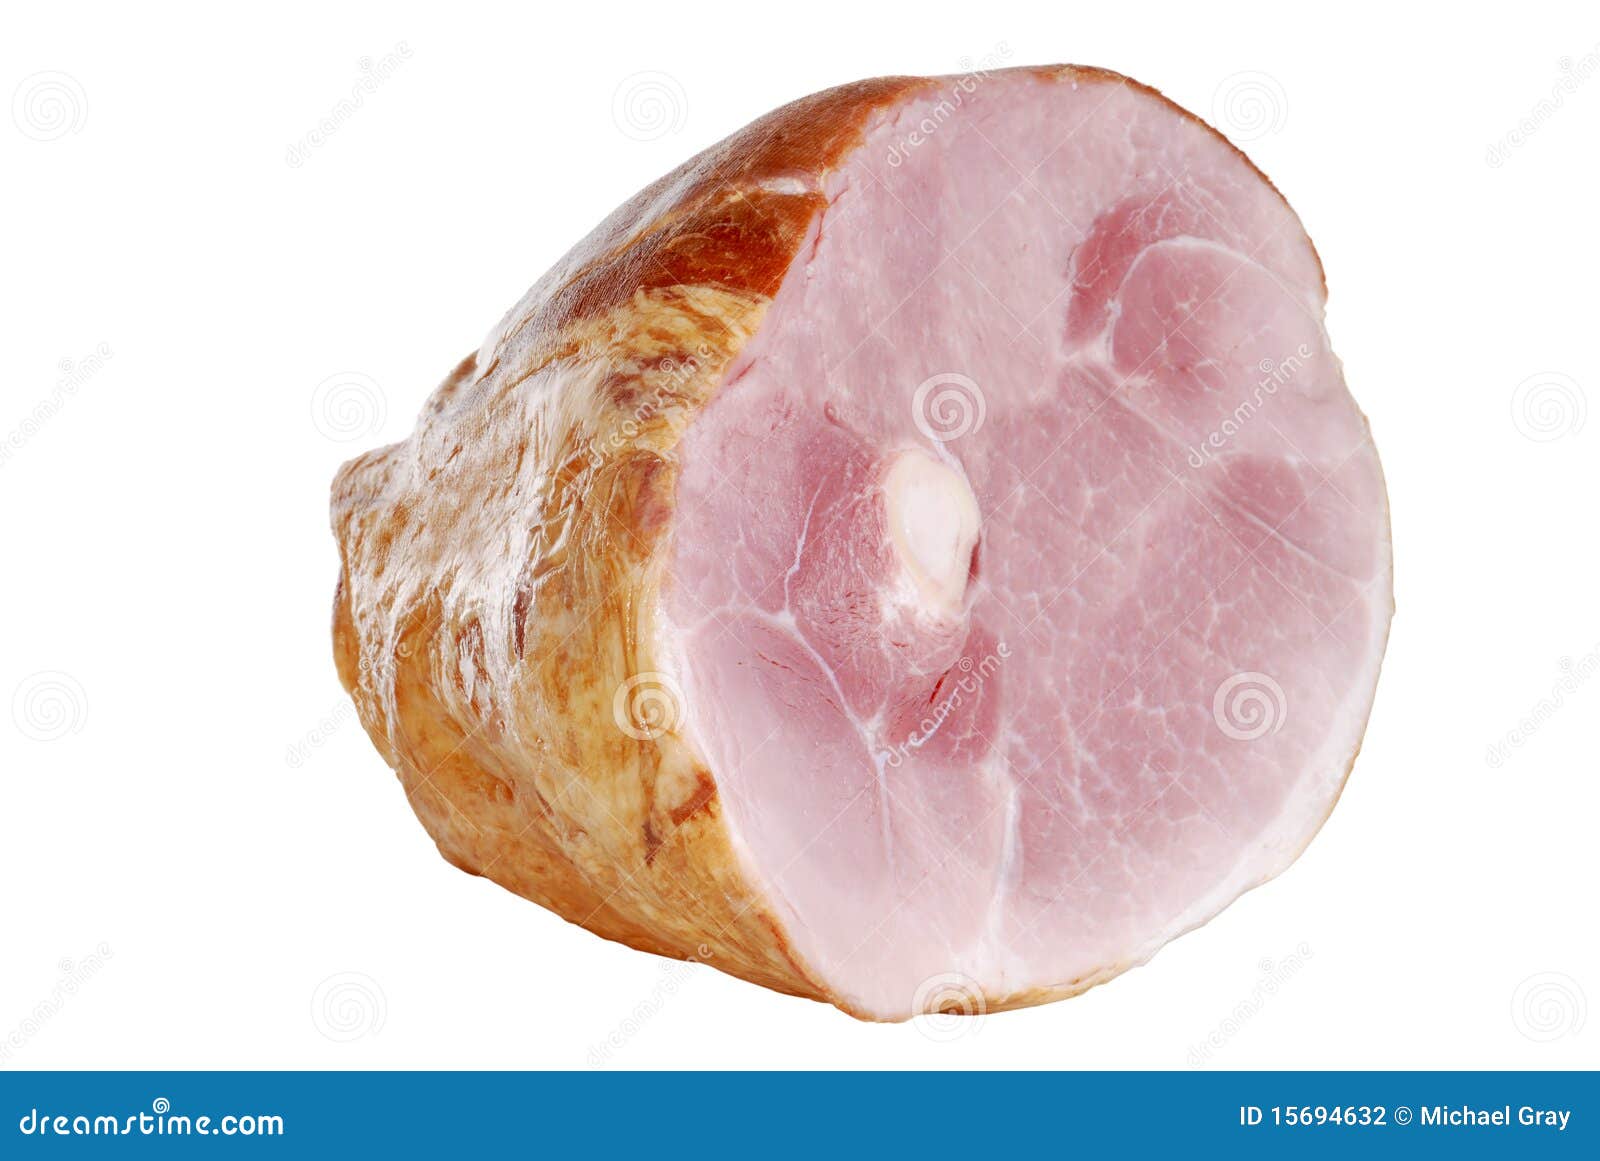 smoked ham